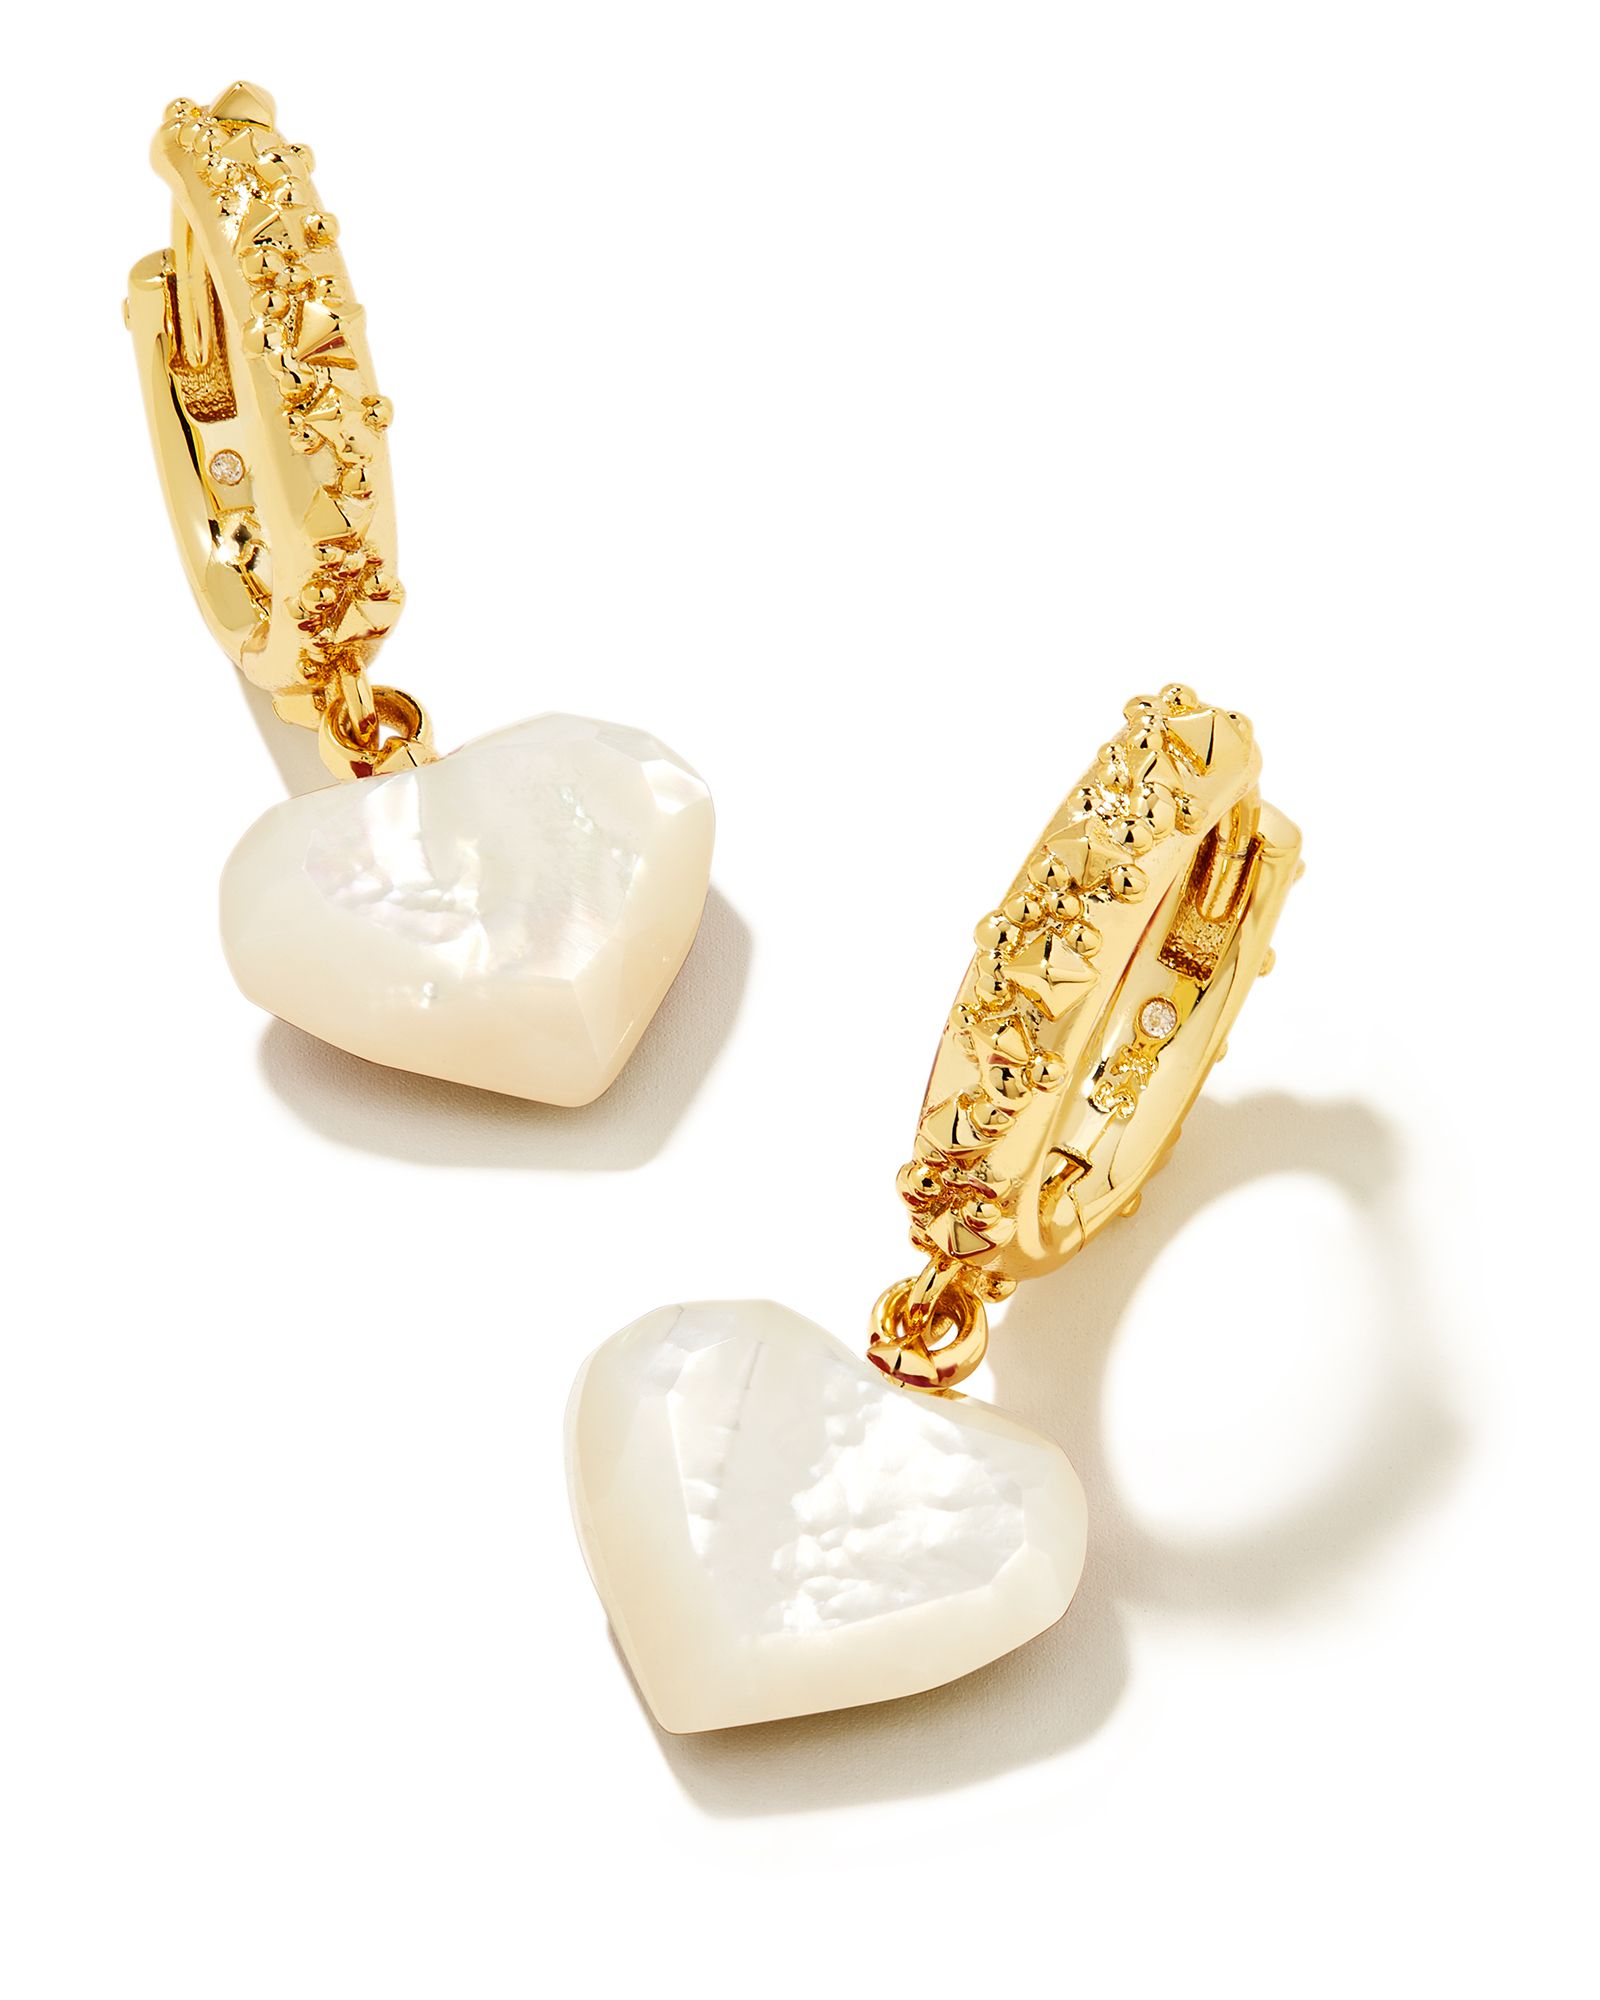 Penny Gold Heart Huggie Earrings in Ivory Mother-of-Pearl | Kendra Scott